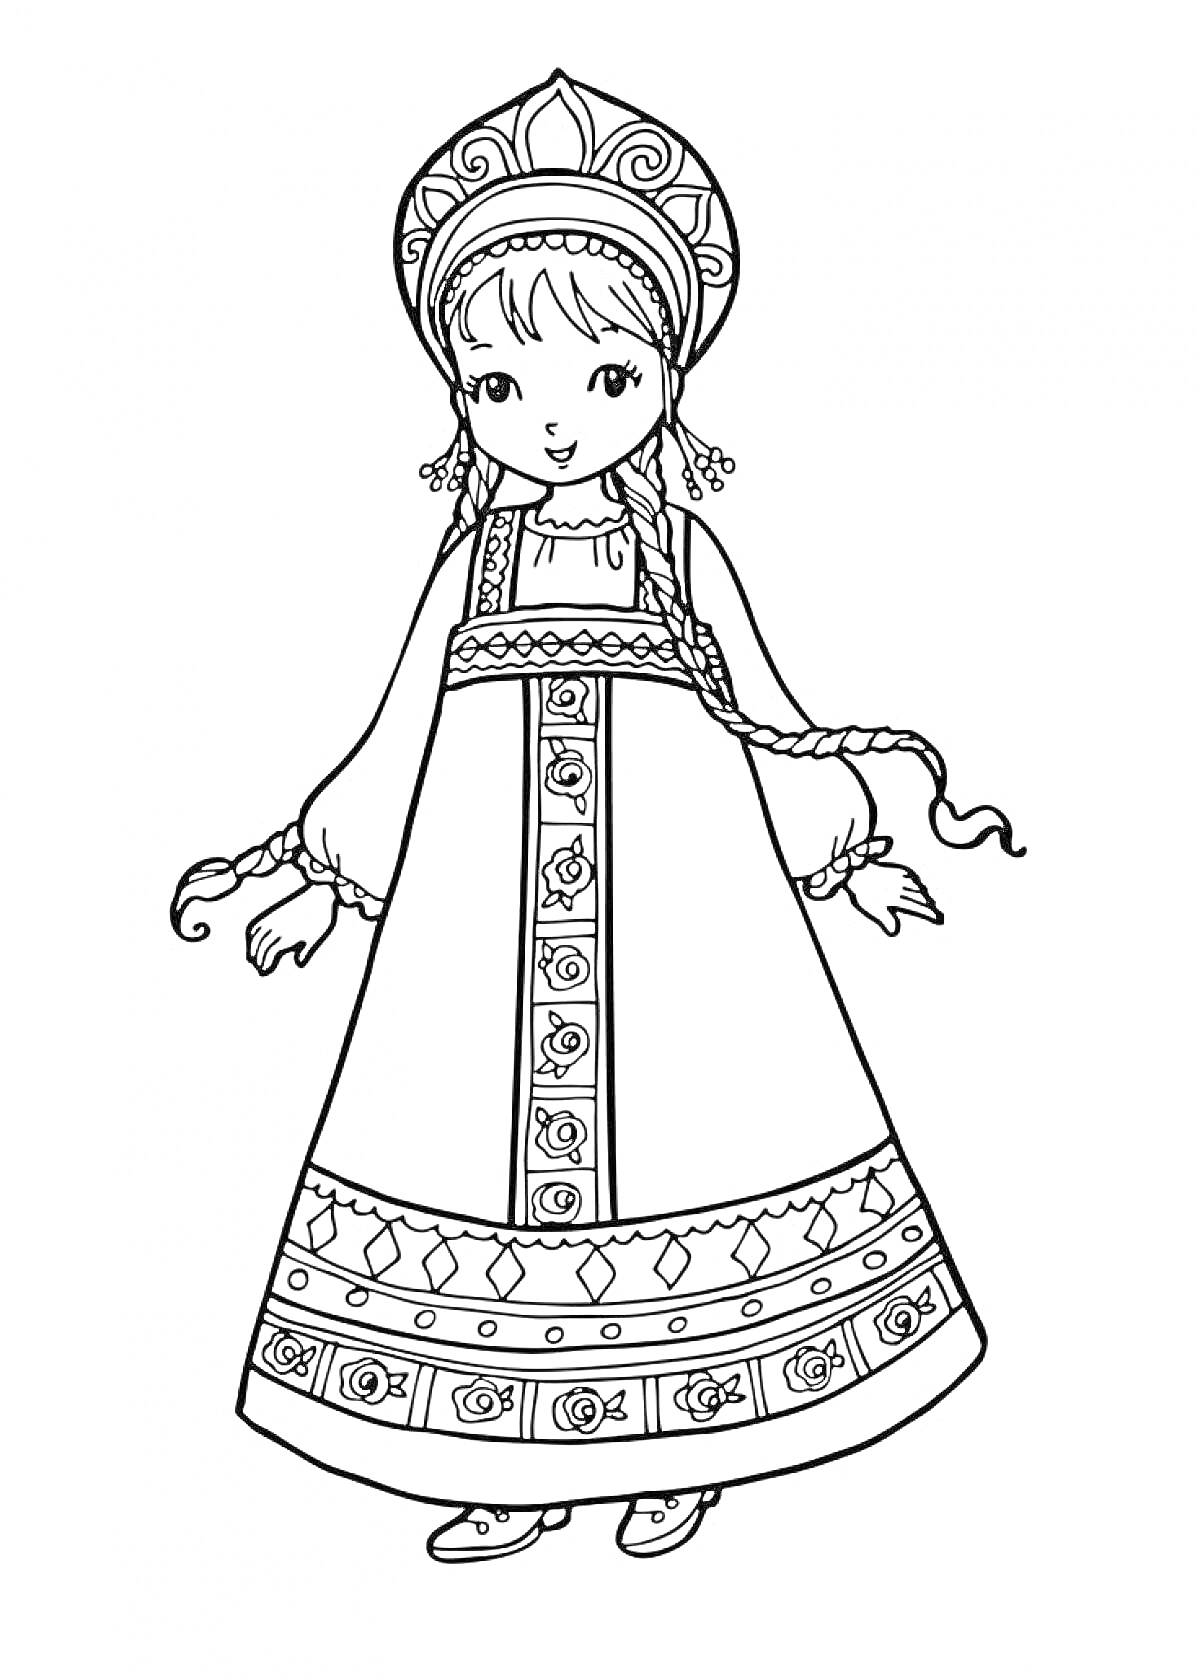 Девочка в русском народном сарафане с кокошником, украшенным узорами, и с длинной косой